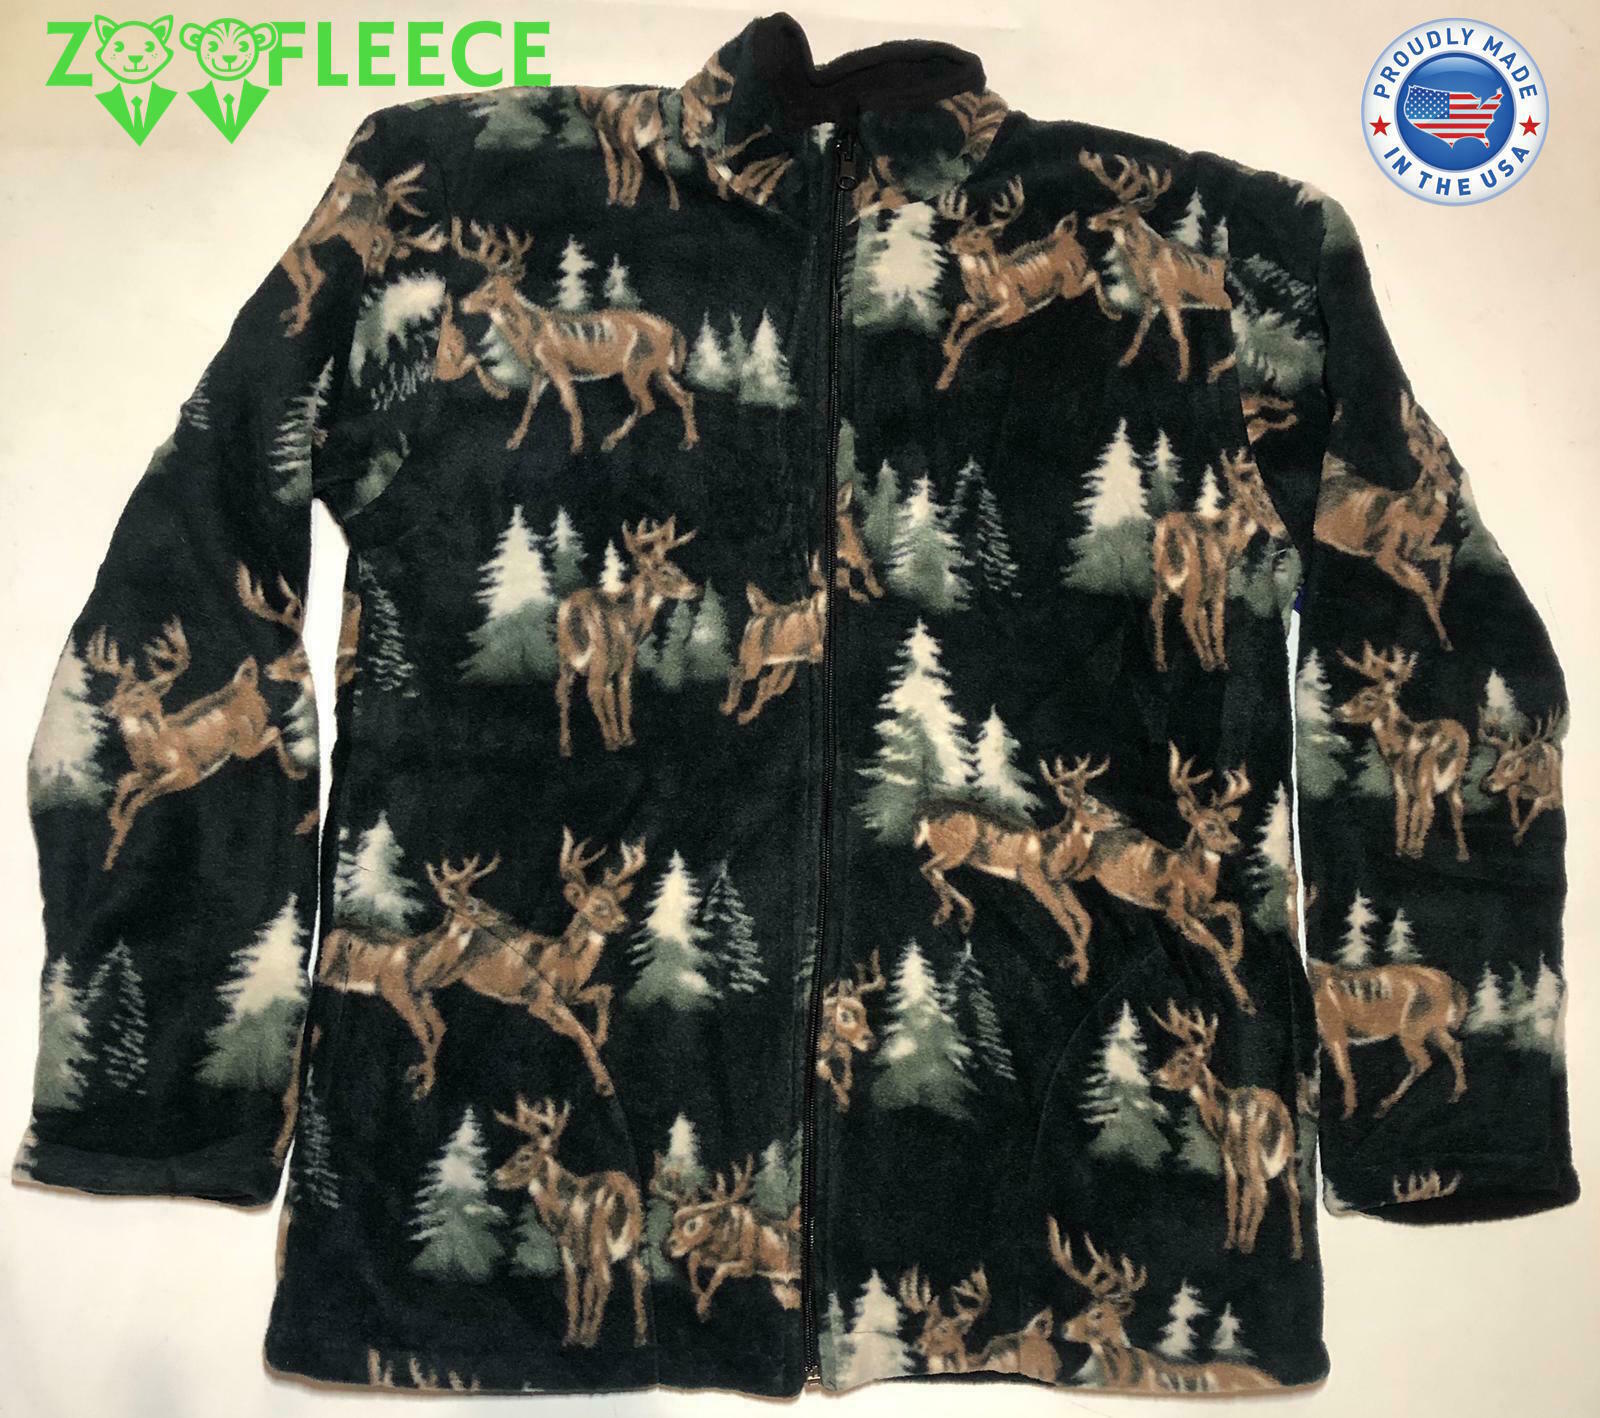 ZooFleece Modern Deer Nature Sweater Buck Animal Black Jacket Coat S-3X